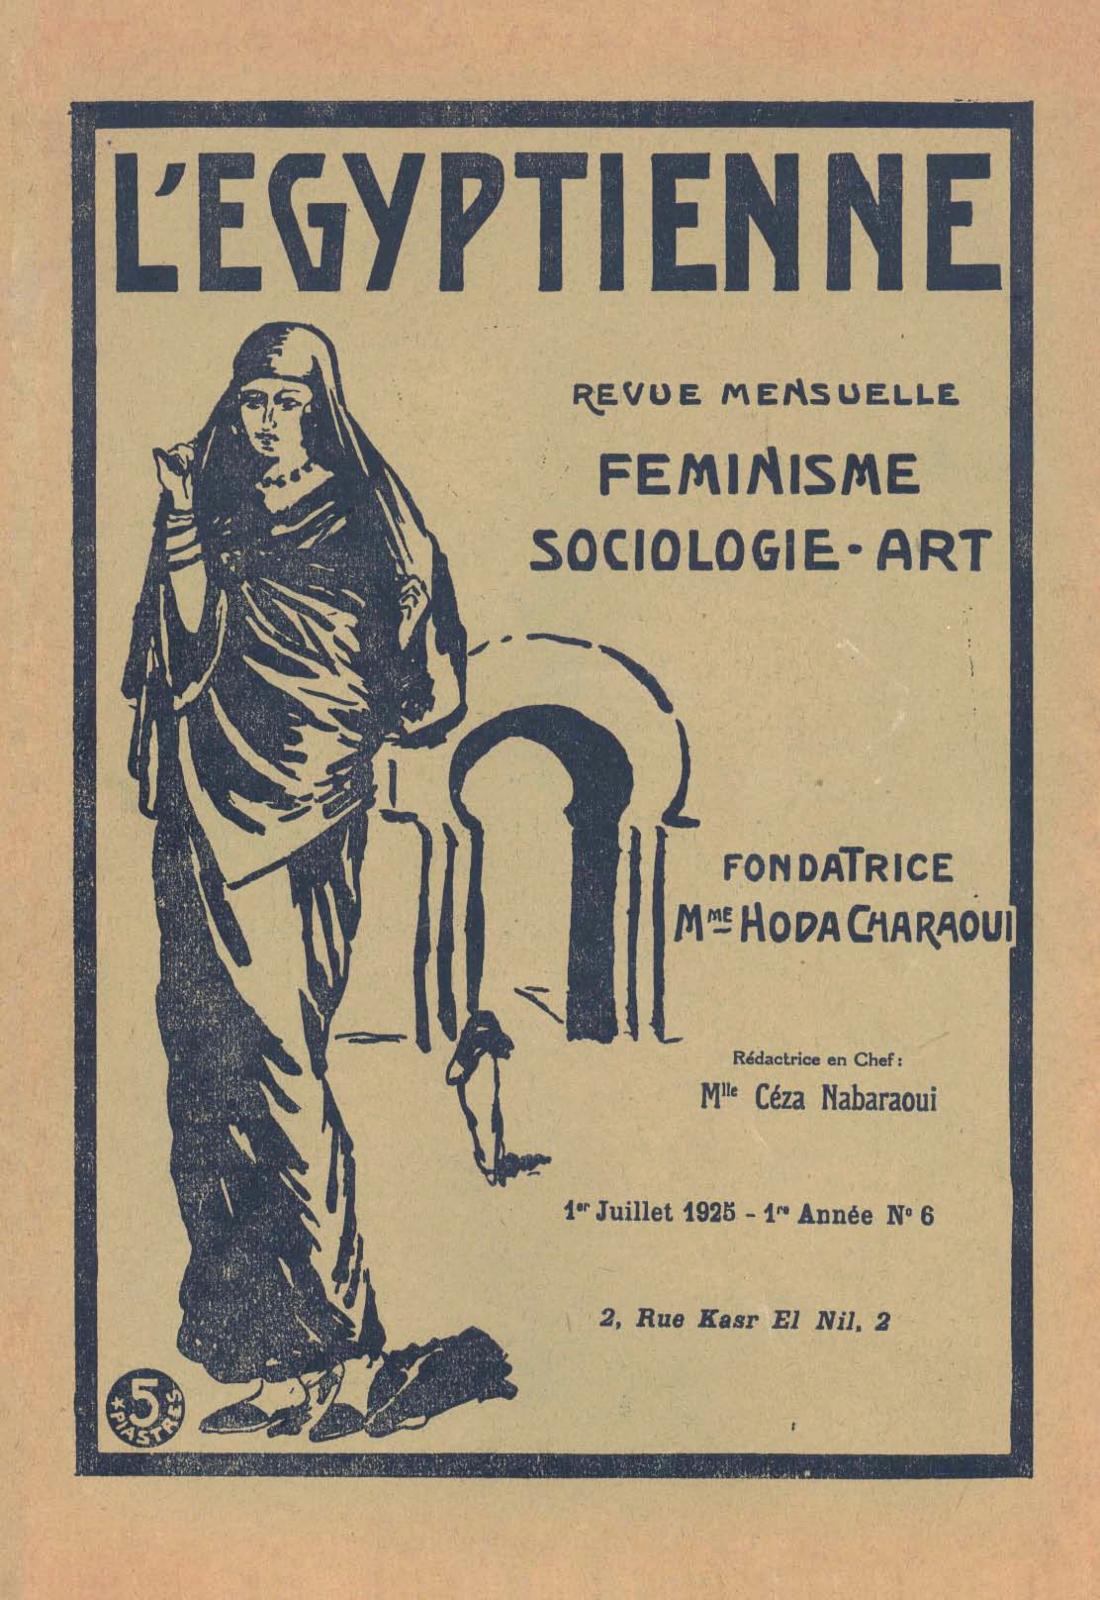 Revue L’Égyptienne, 1925-1940, Égypte.